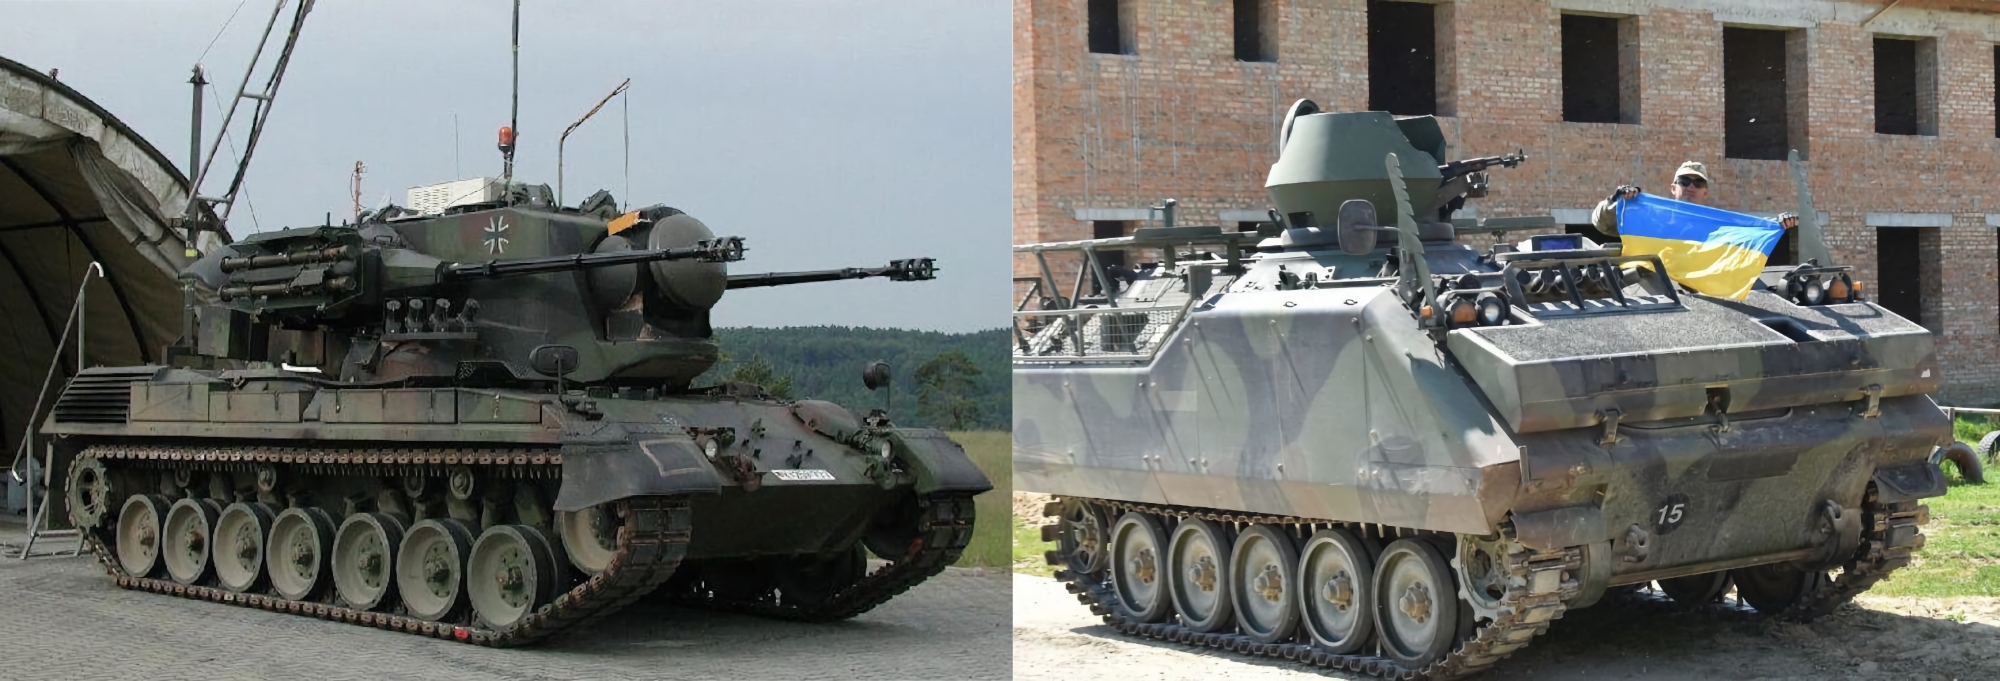 La Germania ha consegnato all'Ucraina altri 3 cannoni antiaerei semoventi Gepard e 11 veicoli corazzati cingolati M113